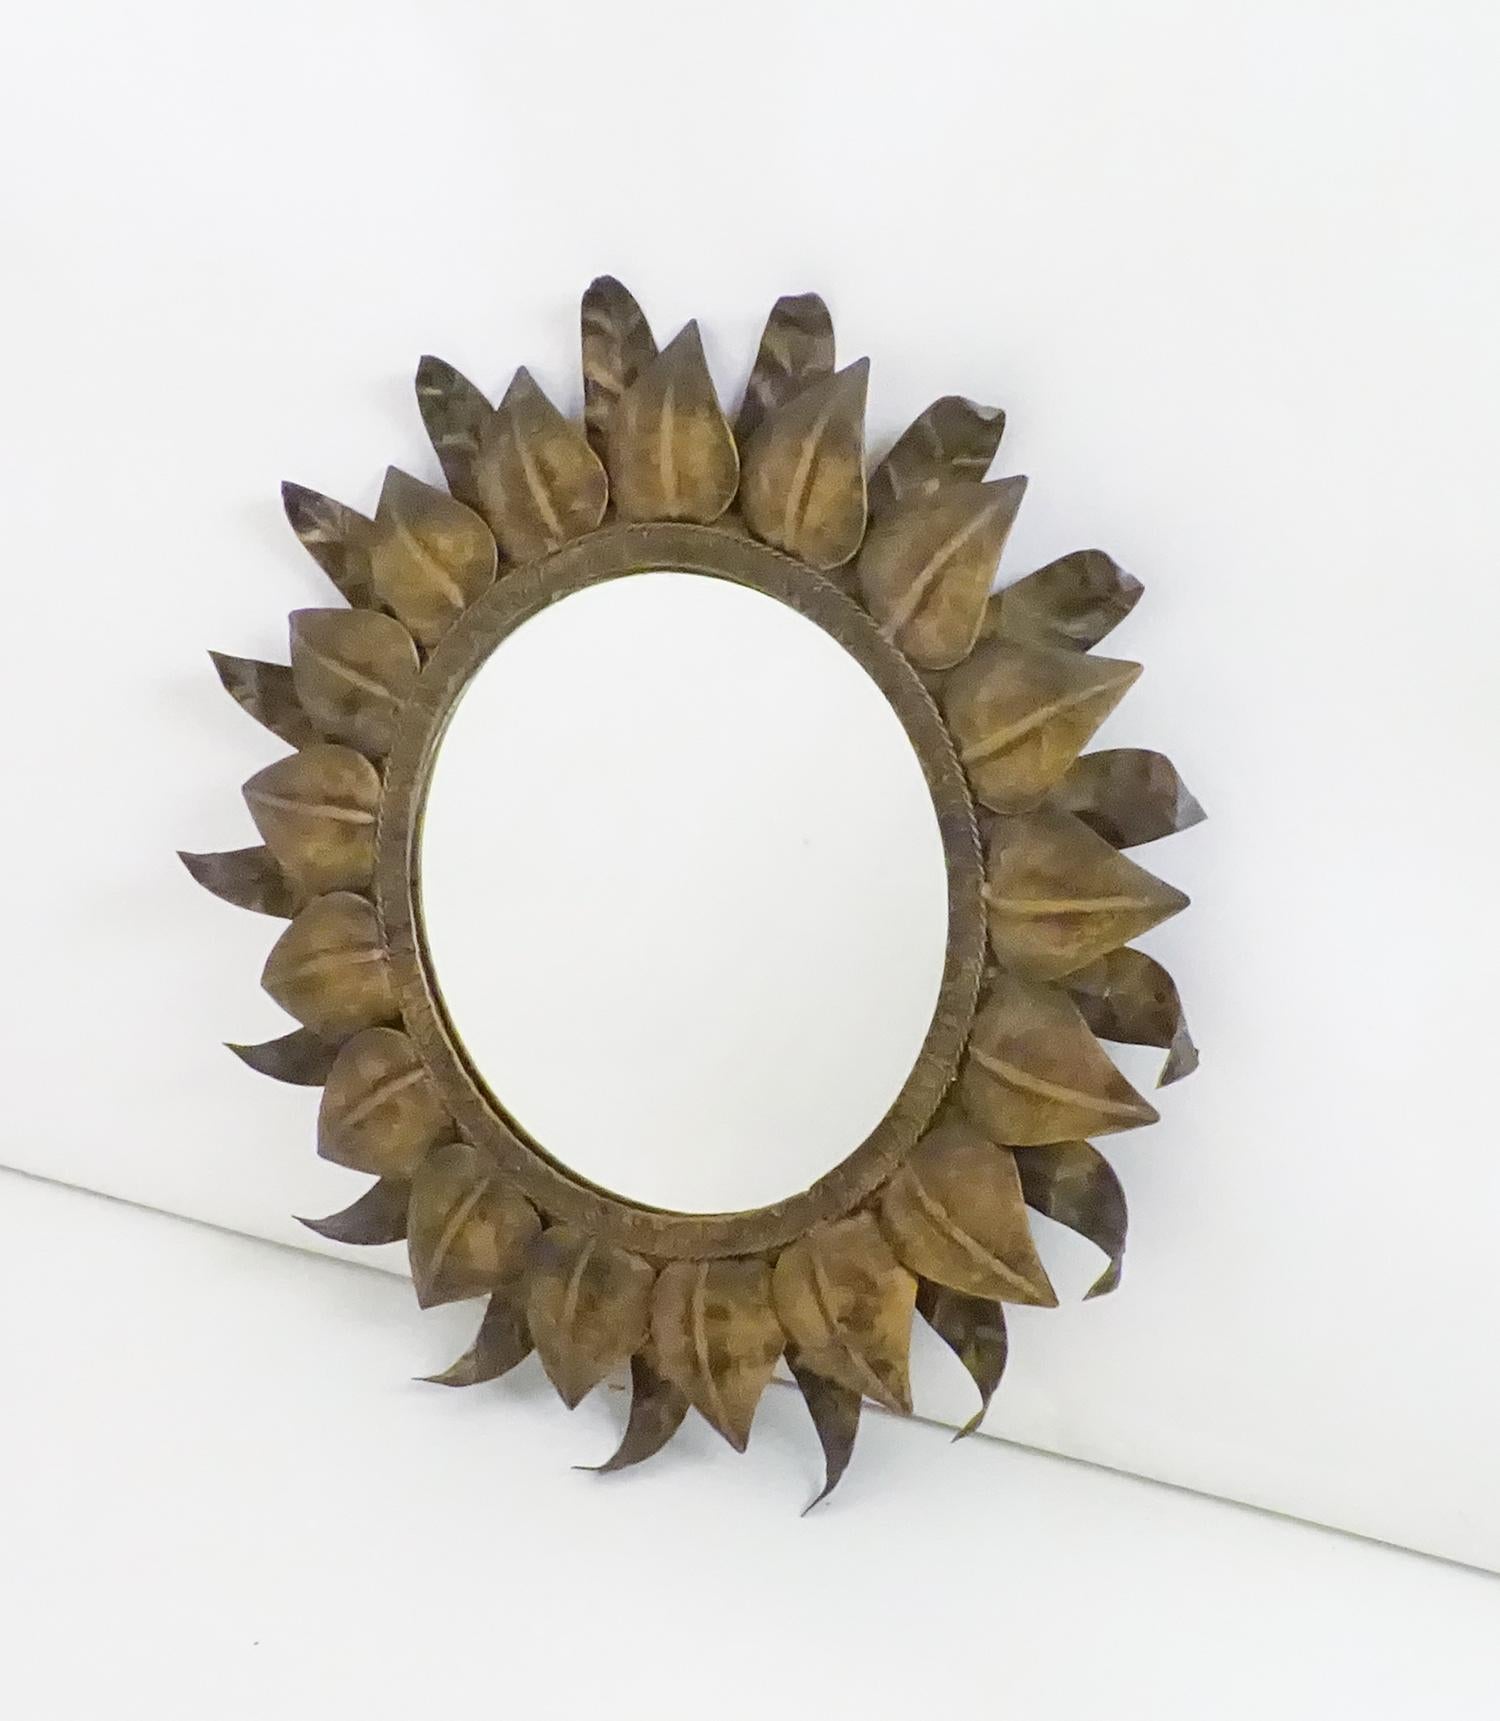 Sonnenförmiger Spiegel aus Schmiedeeisen, 1960er Jahre.
Zwei Reihen von Blättern, Pflanzendekoration in Form von Sonnenstrahlen, die ihm Tiefe verleihen.
Spanischer Ursprung, hergestellt in einer alten Schmiede in Cehegín, Murcia.
Der Mond ist in